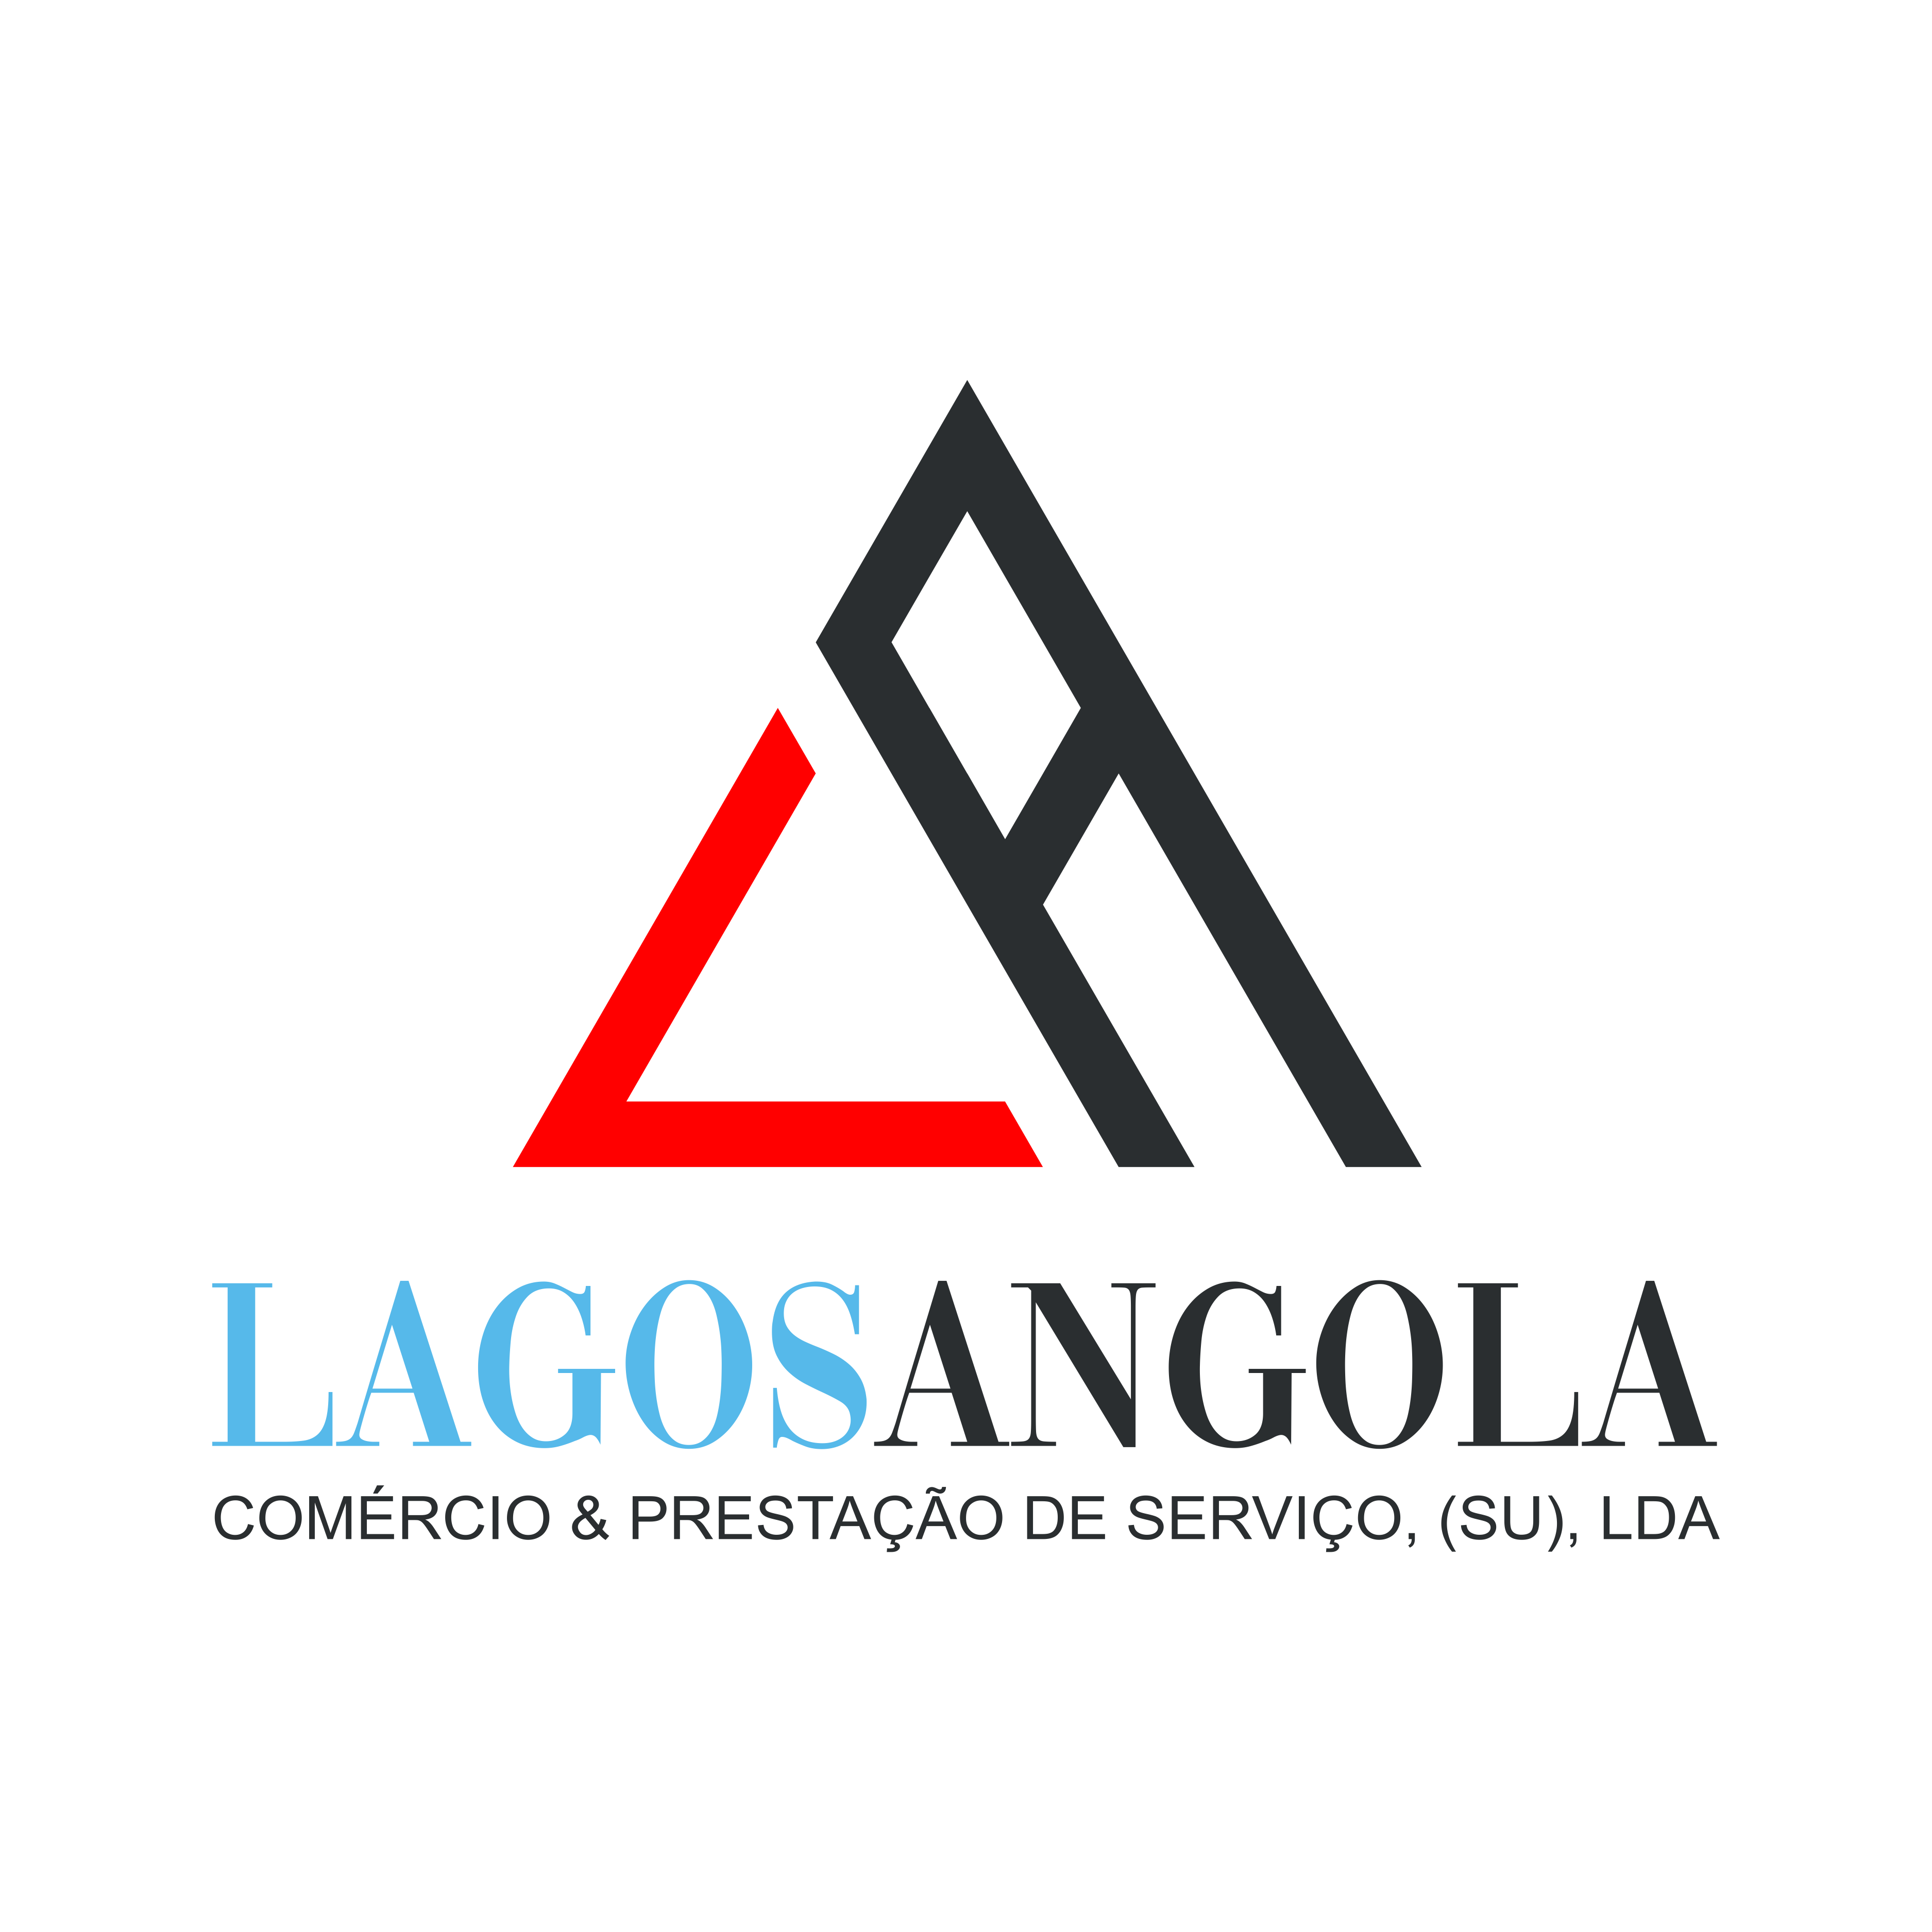 Lagos Angola